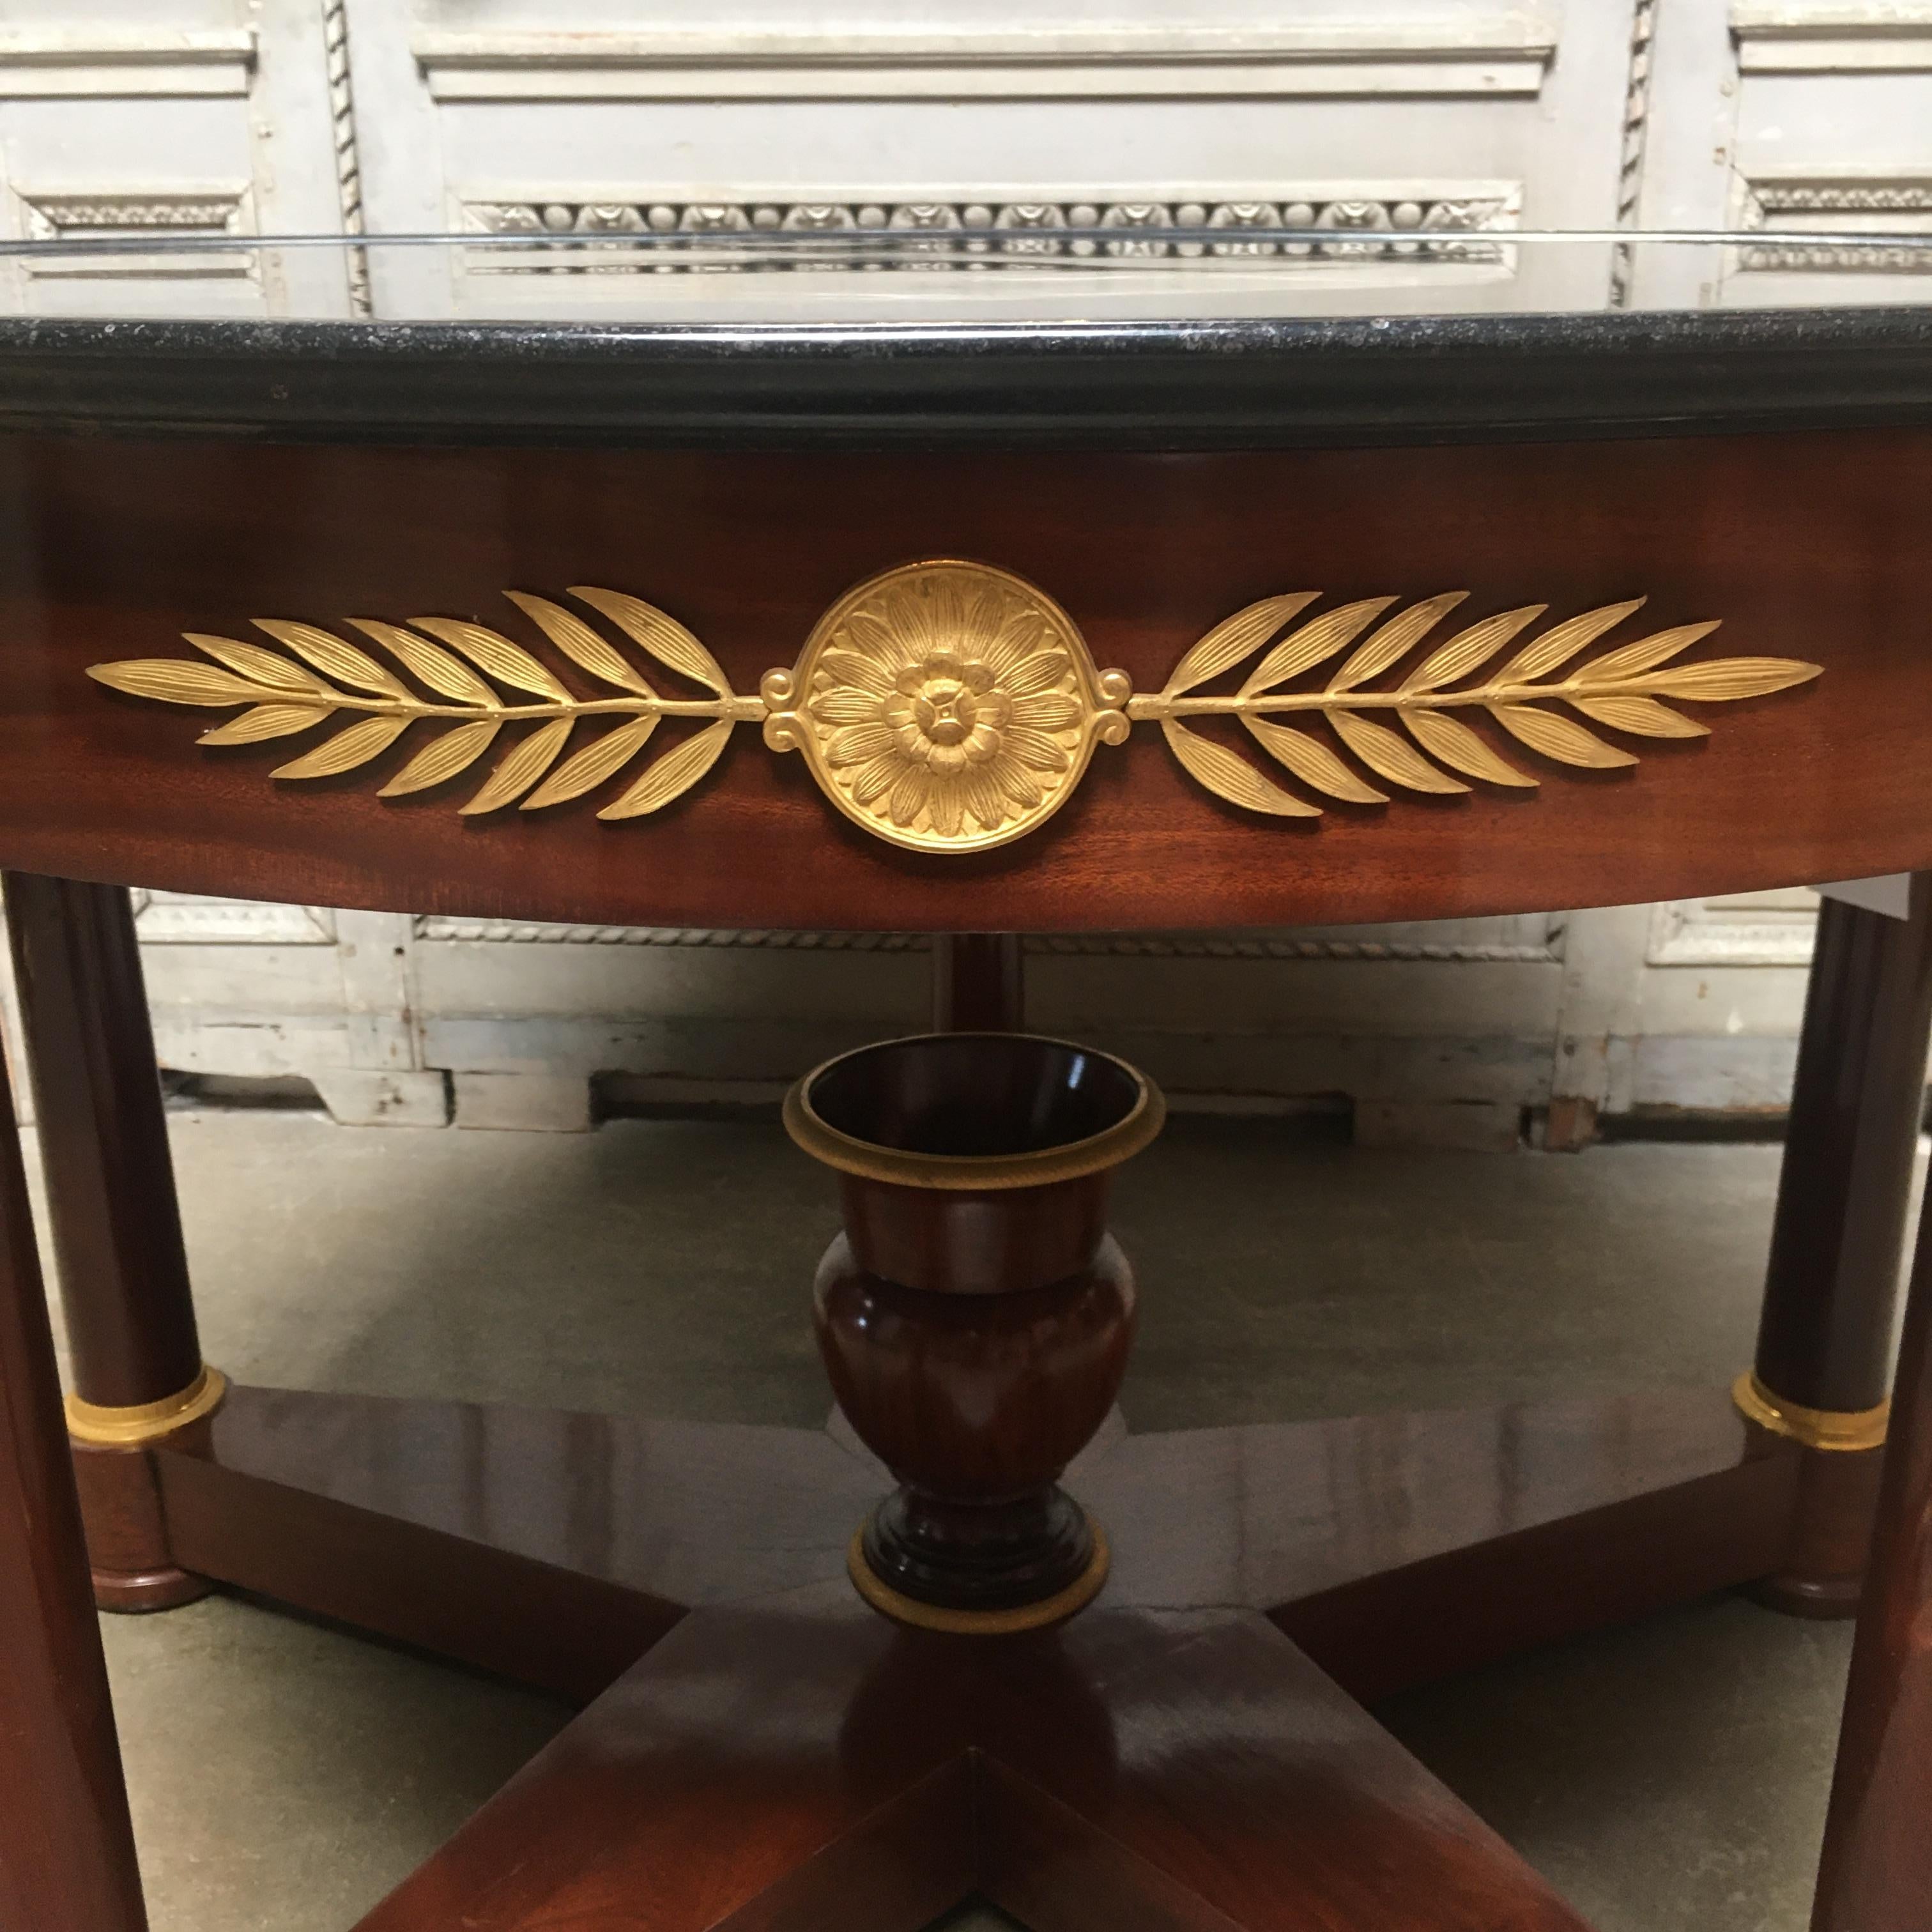 Ein französischer Empire-Mahagoni-Mitteltisch des 19. Jahrhunderts mit Bronze-Doré-Beschlägen und einer Marmorplatte.  Dieser hübsche Tisch ist mit wunderschön ausgeführten Bronzeteilen versehen, die an der Schürze und den Beinen des Tisches